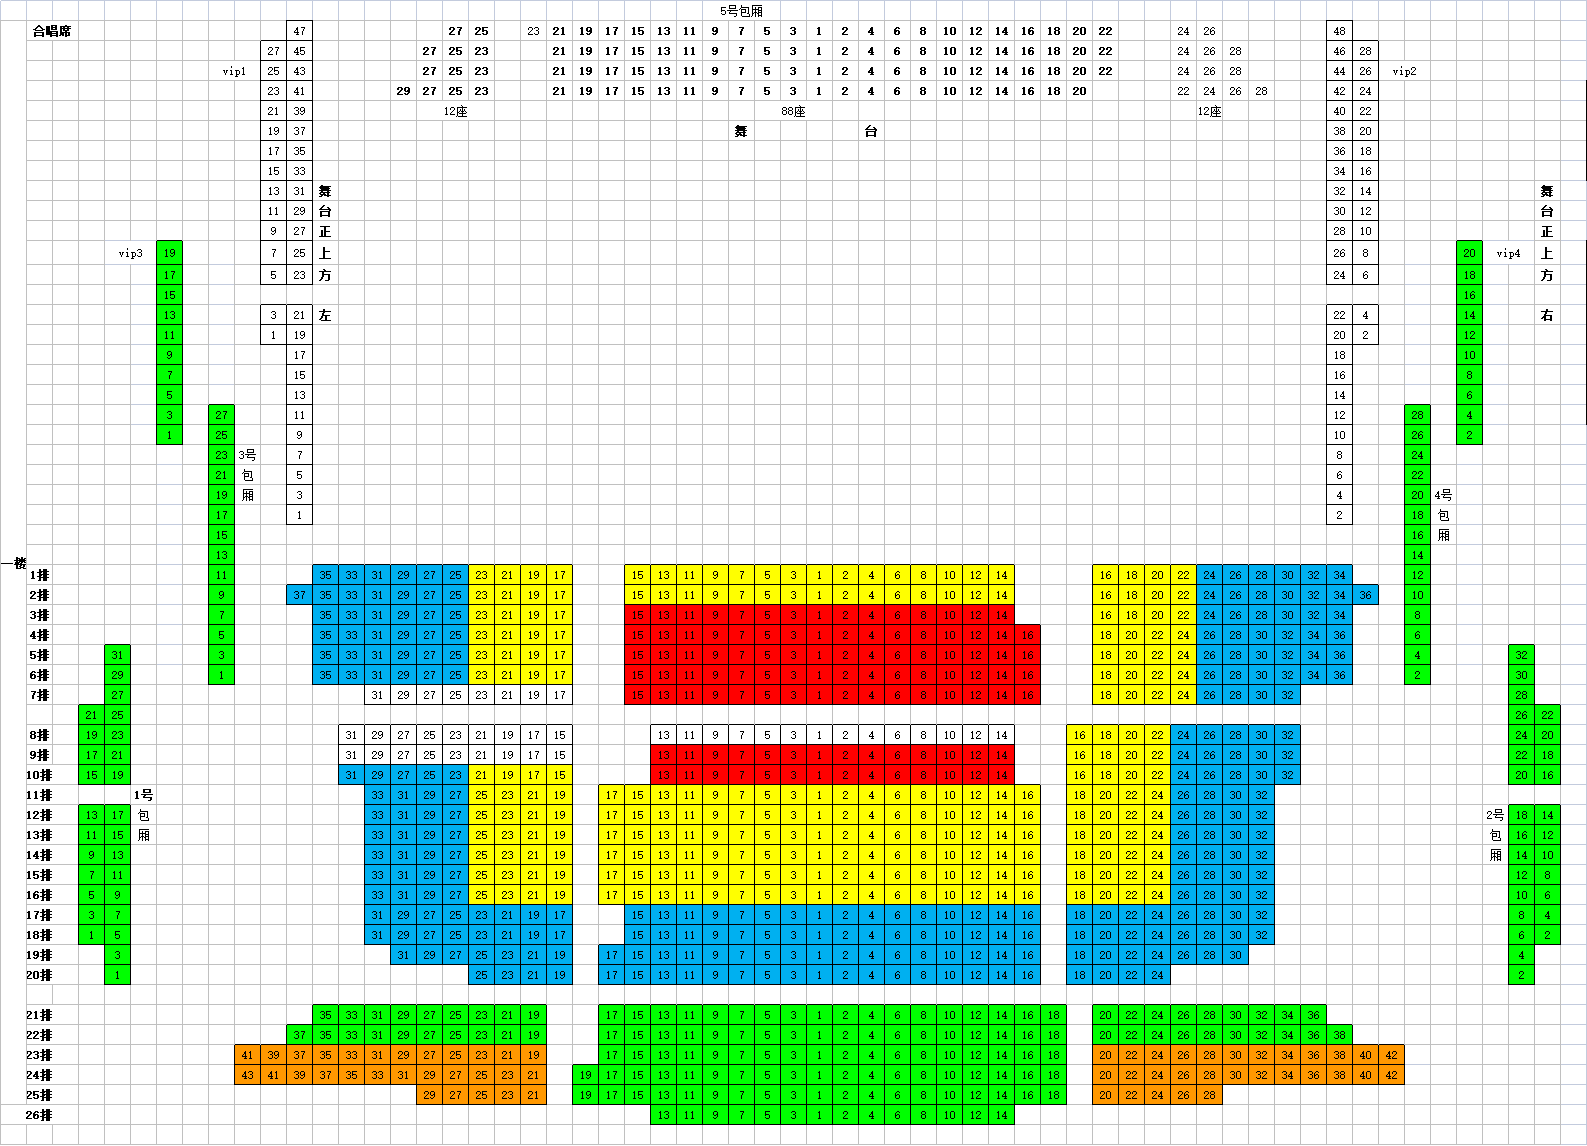 琴台大剧院座位图片